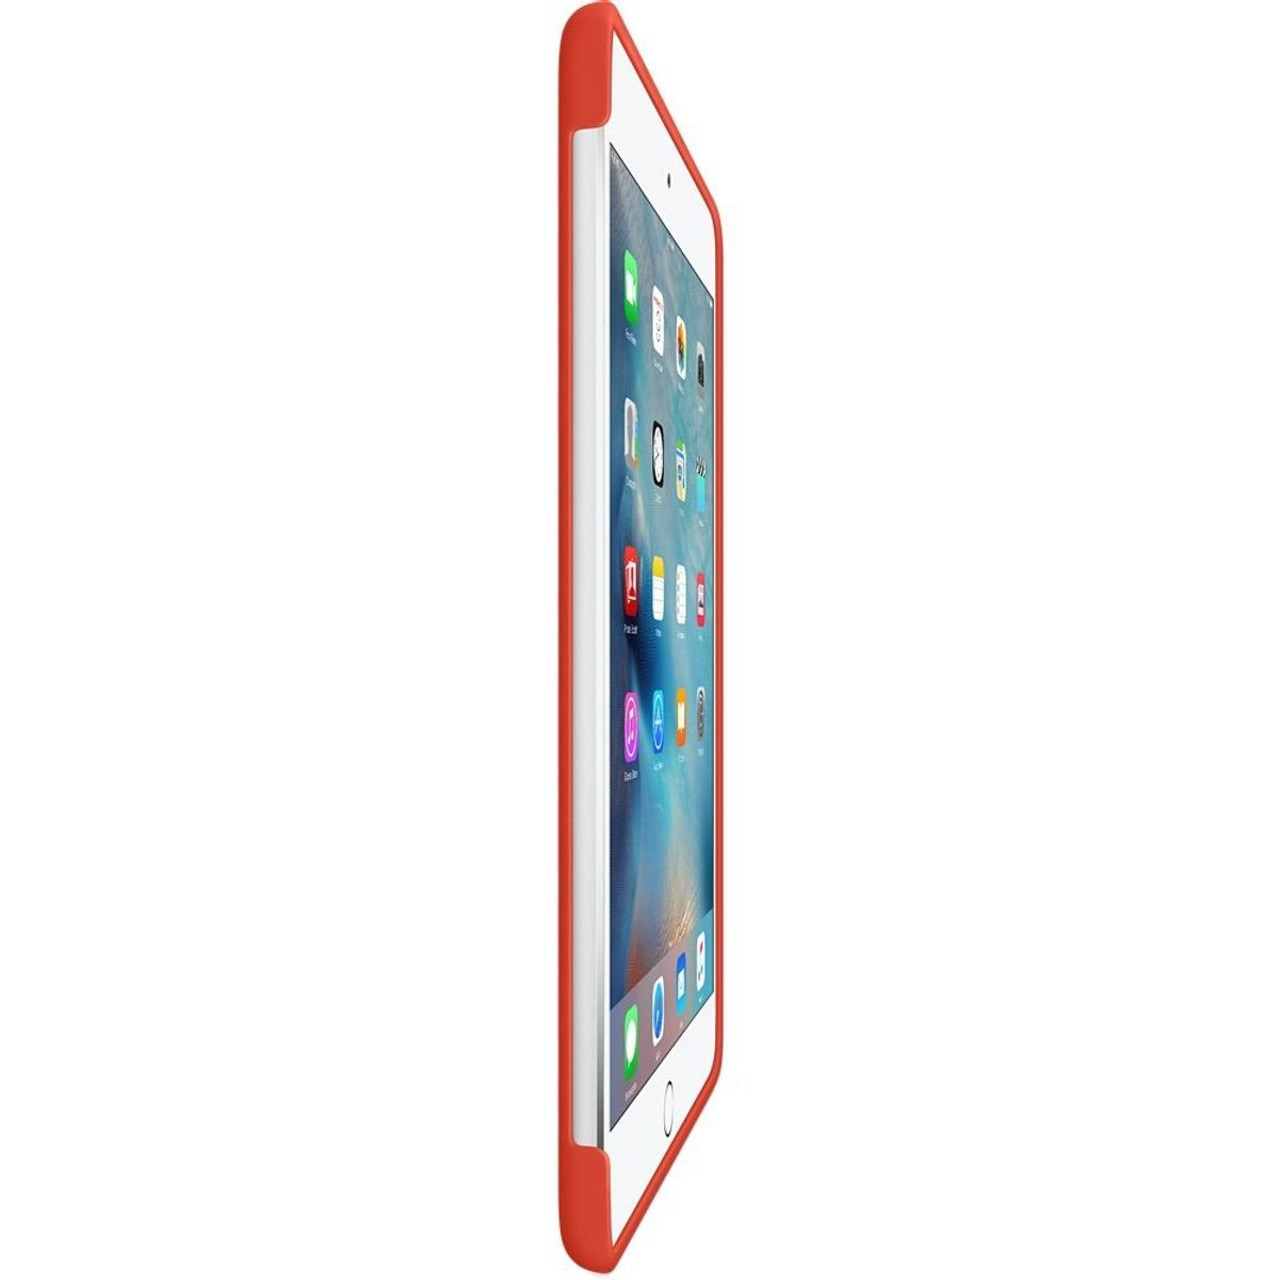 Apple iPad mini 4 Silicone Case product image